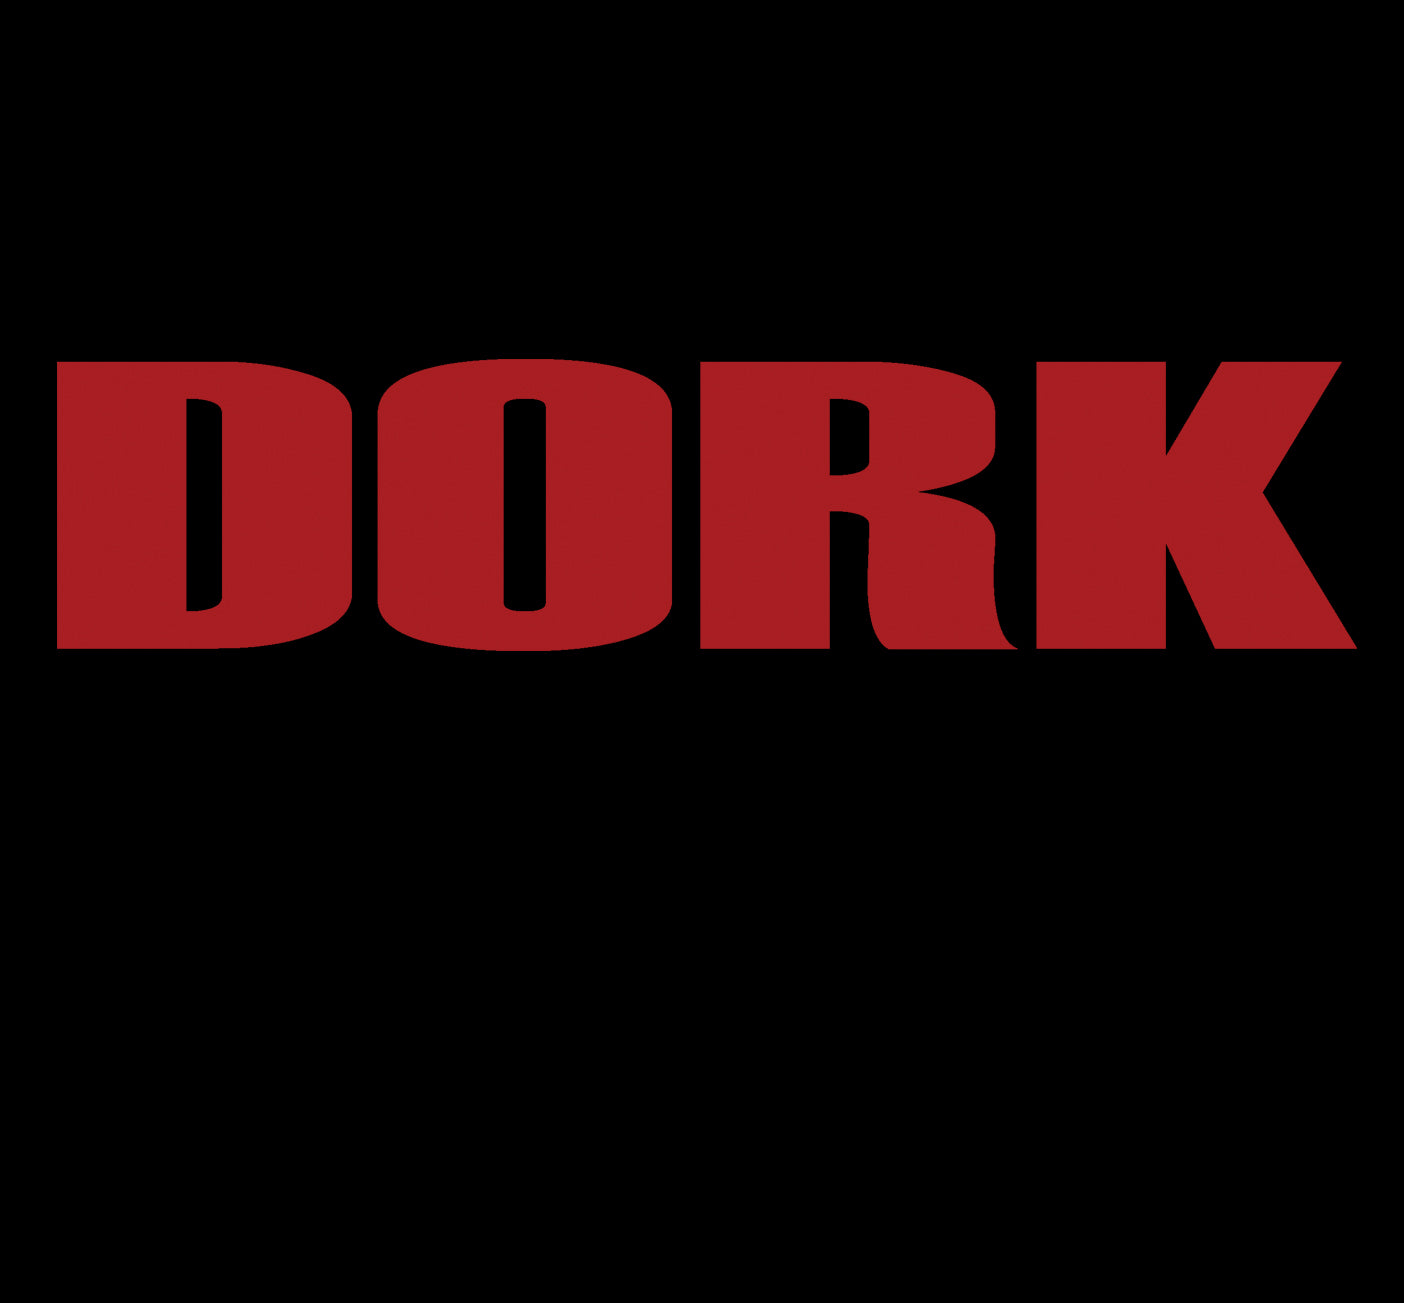 Dork T-shirt Design in Black round neck